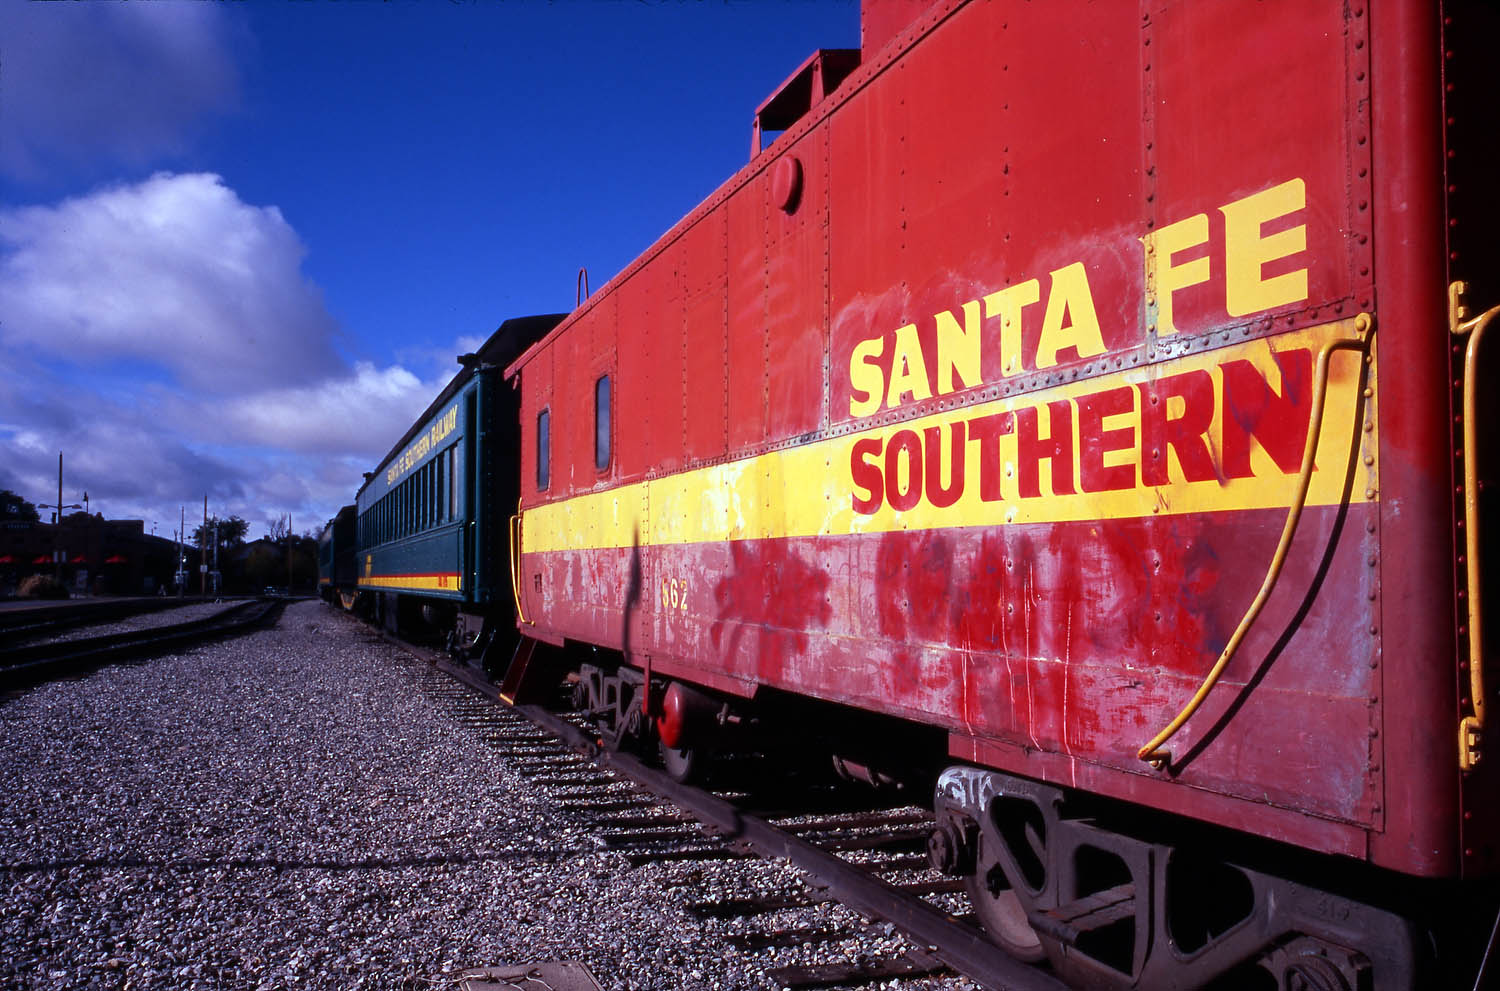 Santa Fe 33